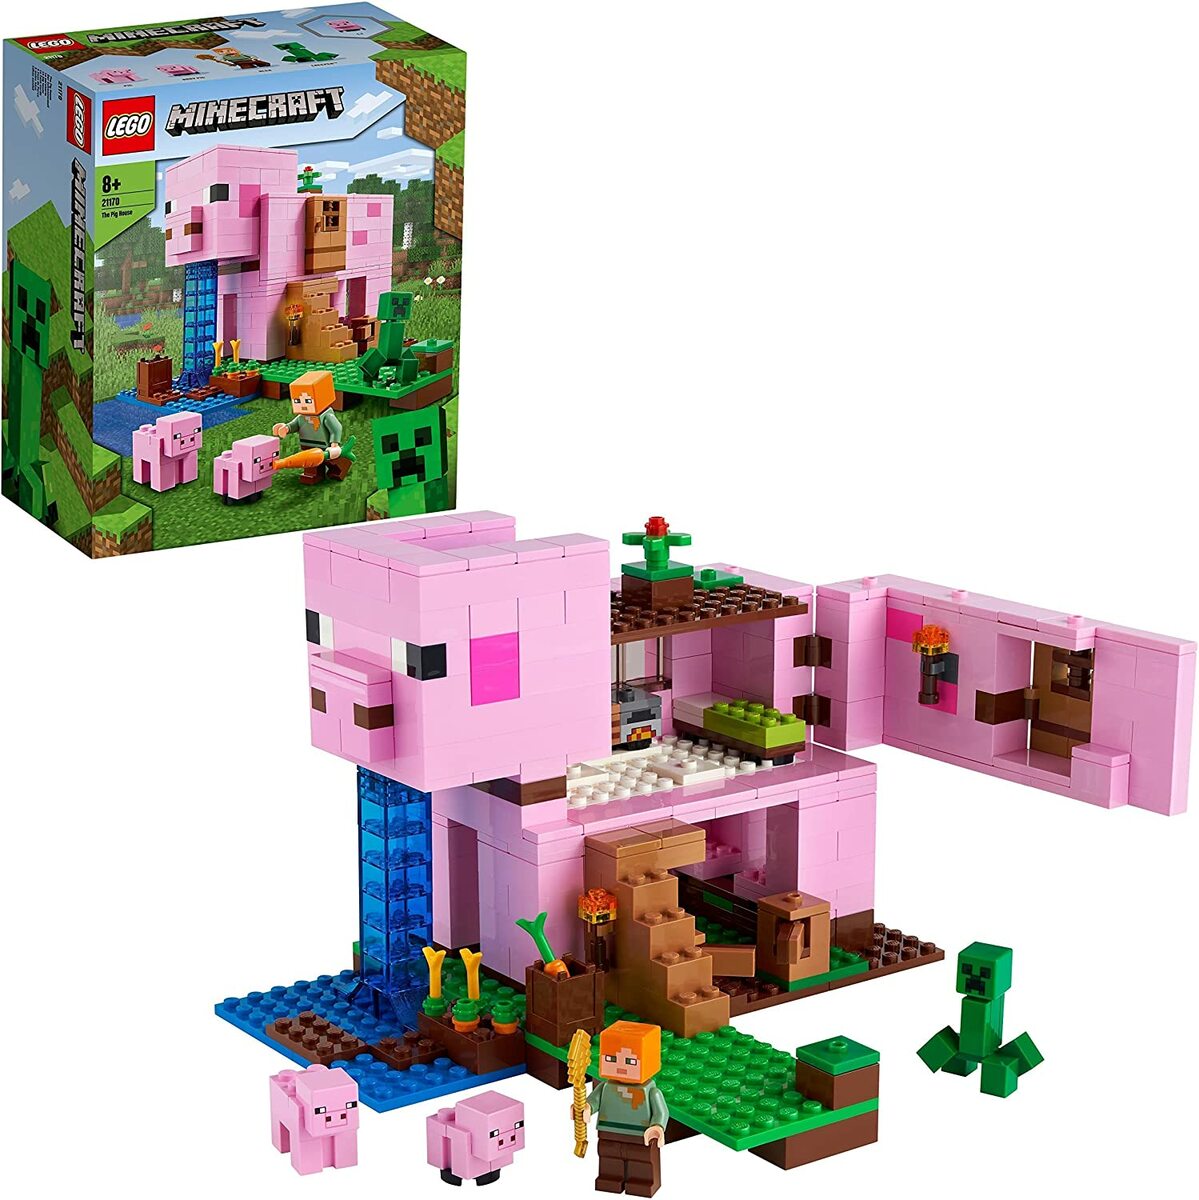 レゴ マインクラフト ブタのおうち 21170 レゴブロック legoブロック ブロック遊び おうち遊び 室内遊び 子供 子ども こども 小学生 家で遊べるおもちゃ 男の子のおもちゃ 女の子のおもちゃ 誕プレ 誕生日プレゼント おもちゃ